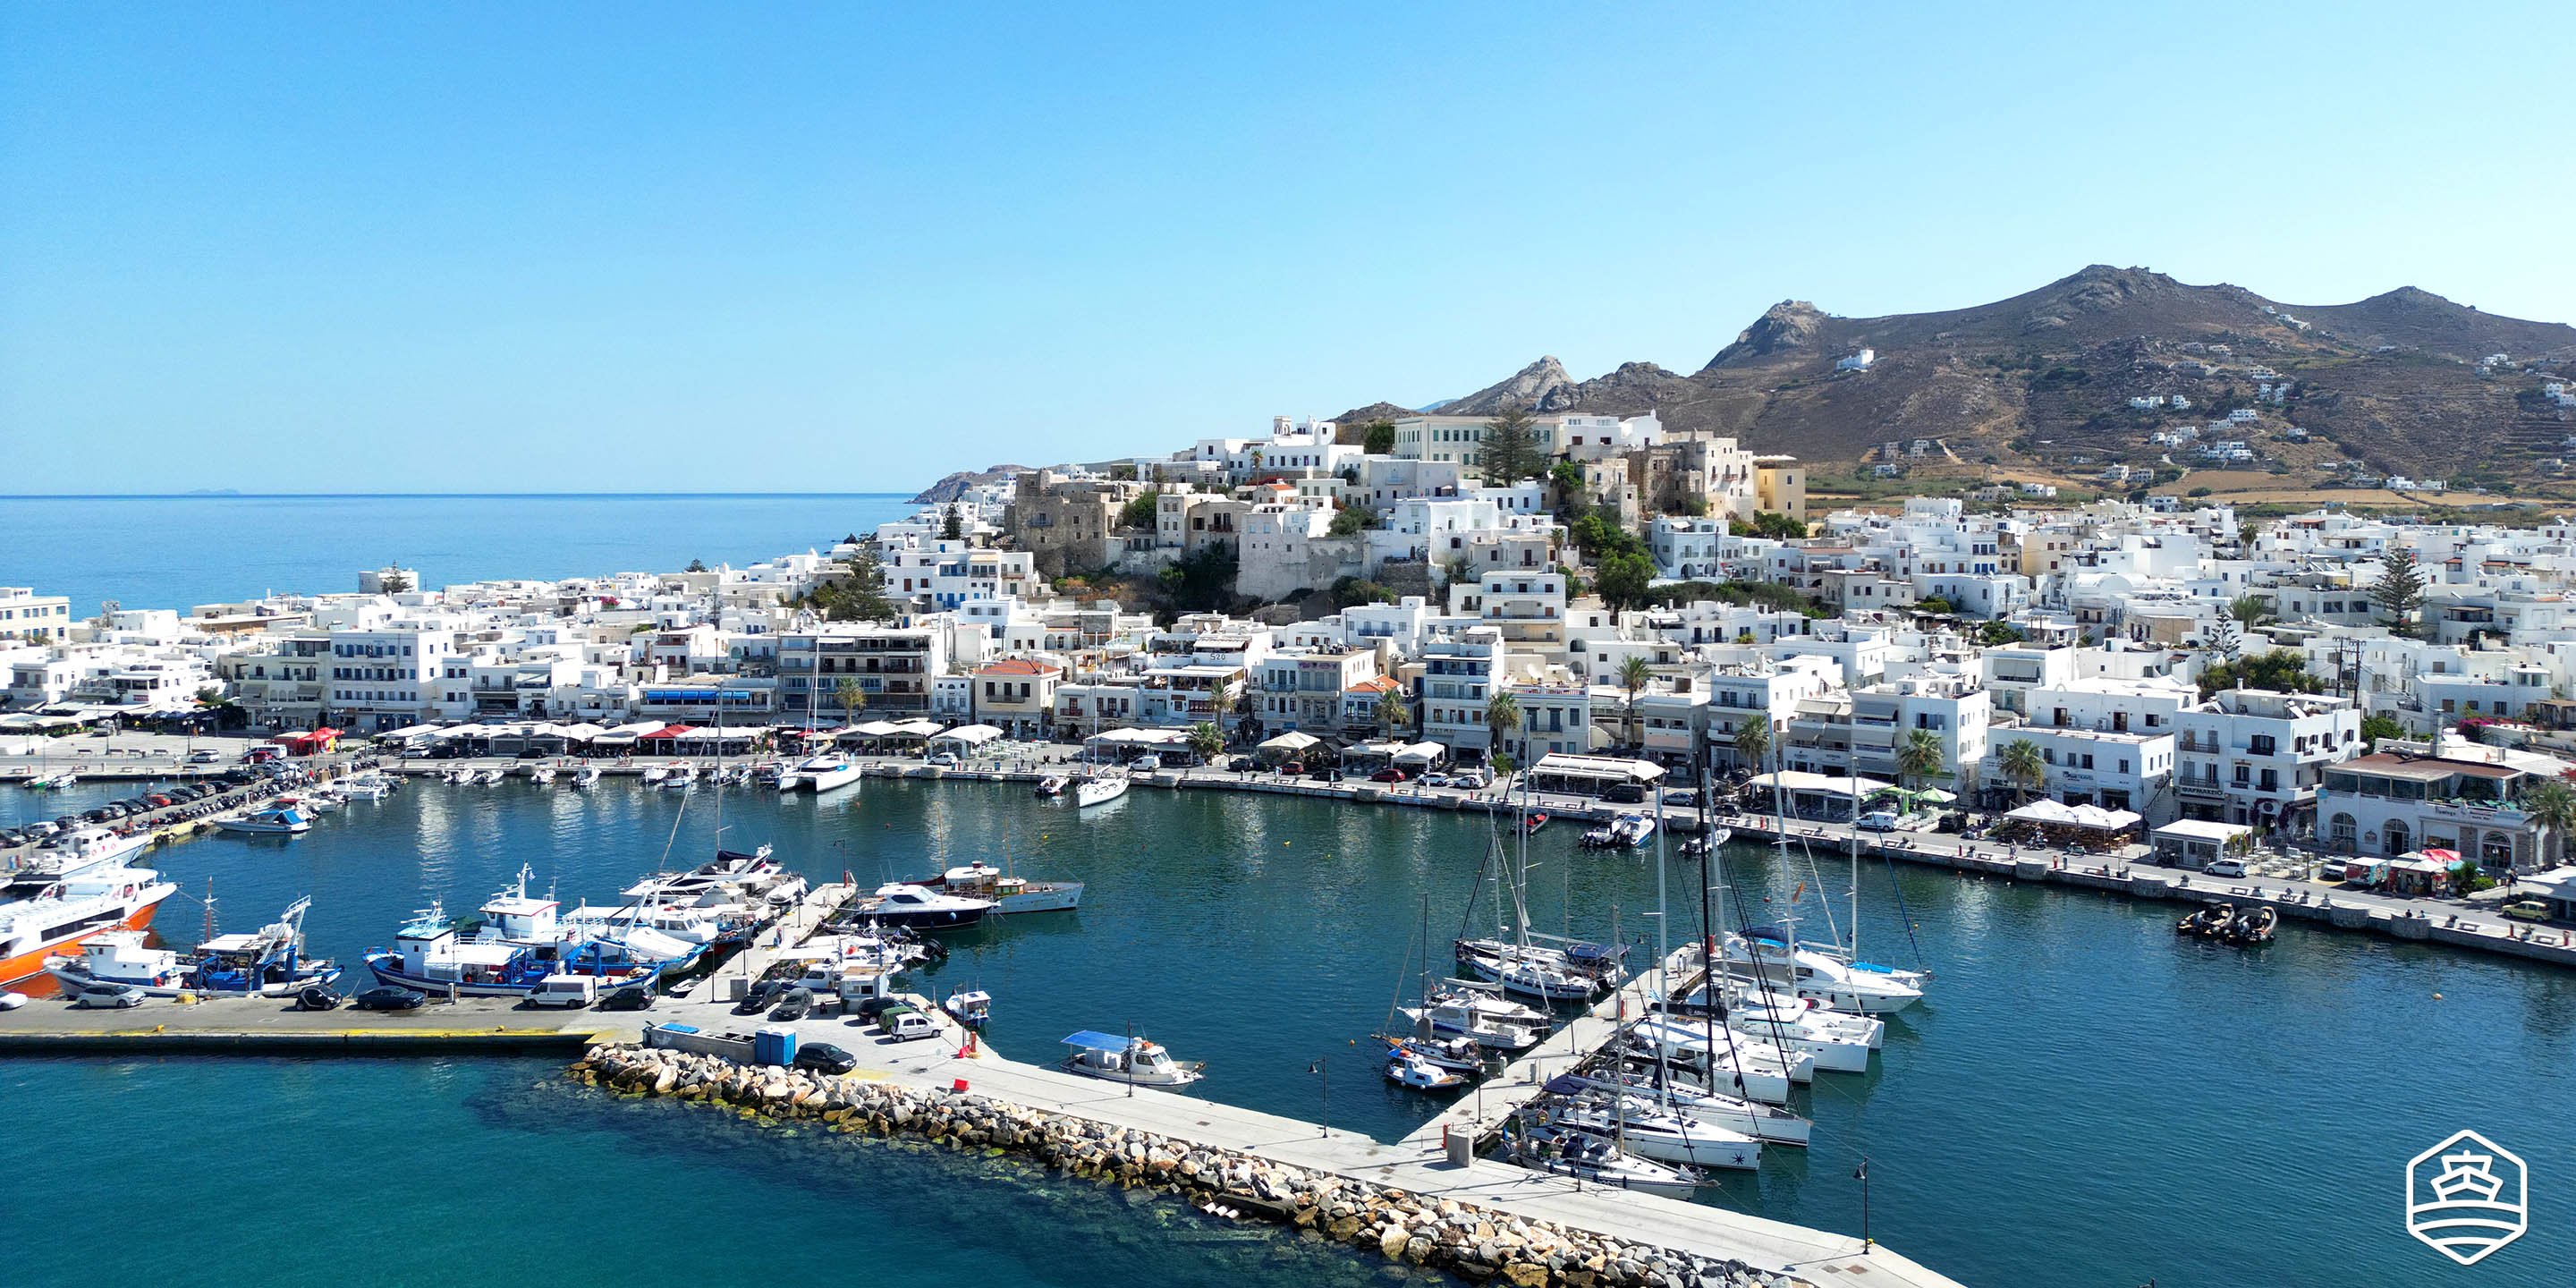 Vista aerea della città e del porto dell'isola di Naxos